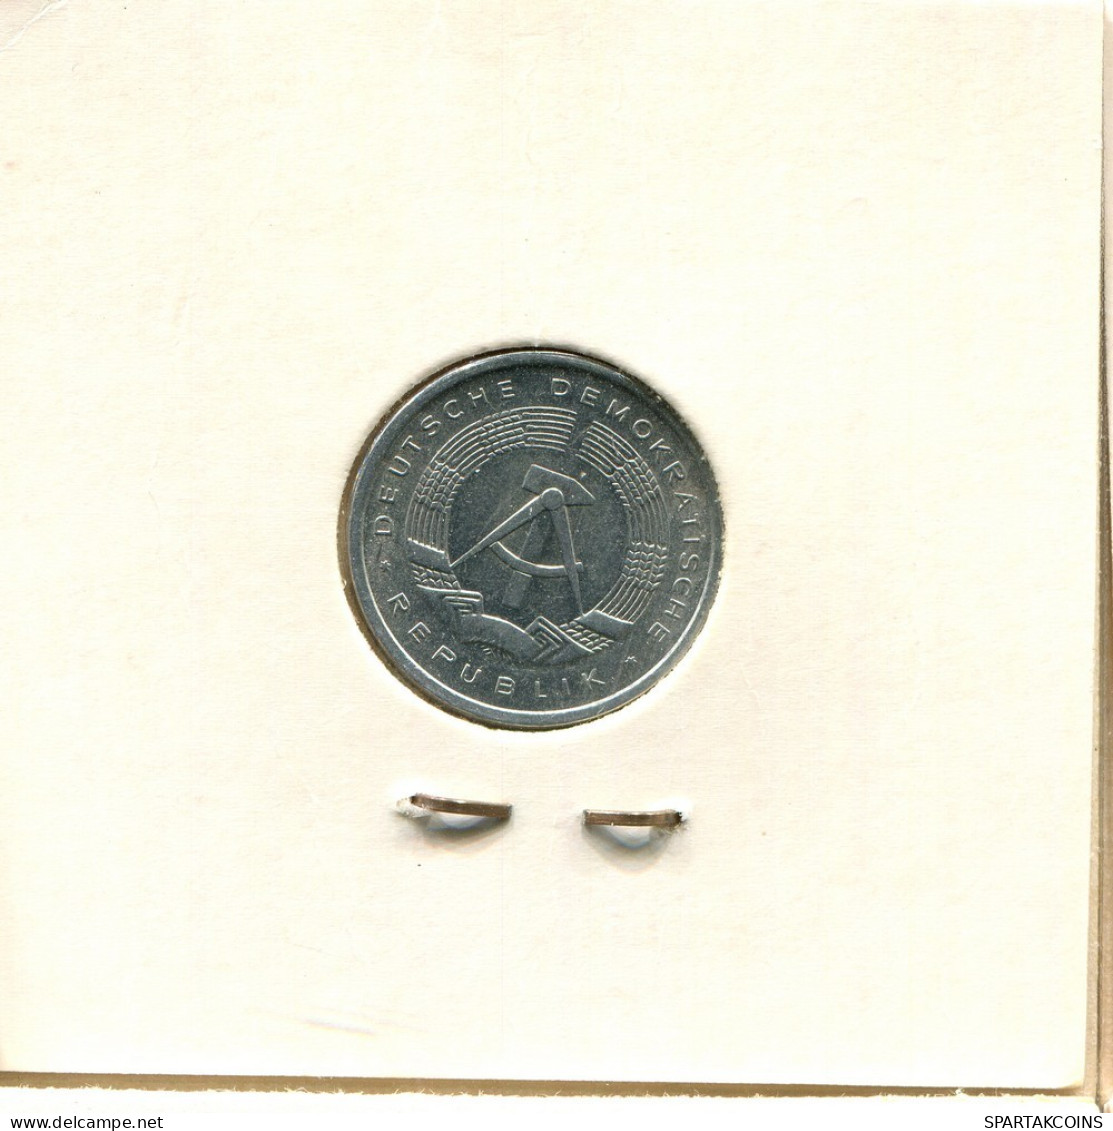 1 PFENNIG 1980 A DDR EAST GERMANY Coin #BA086.U.A - 1 Pfennig